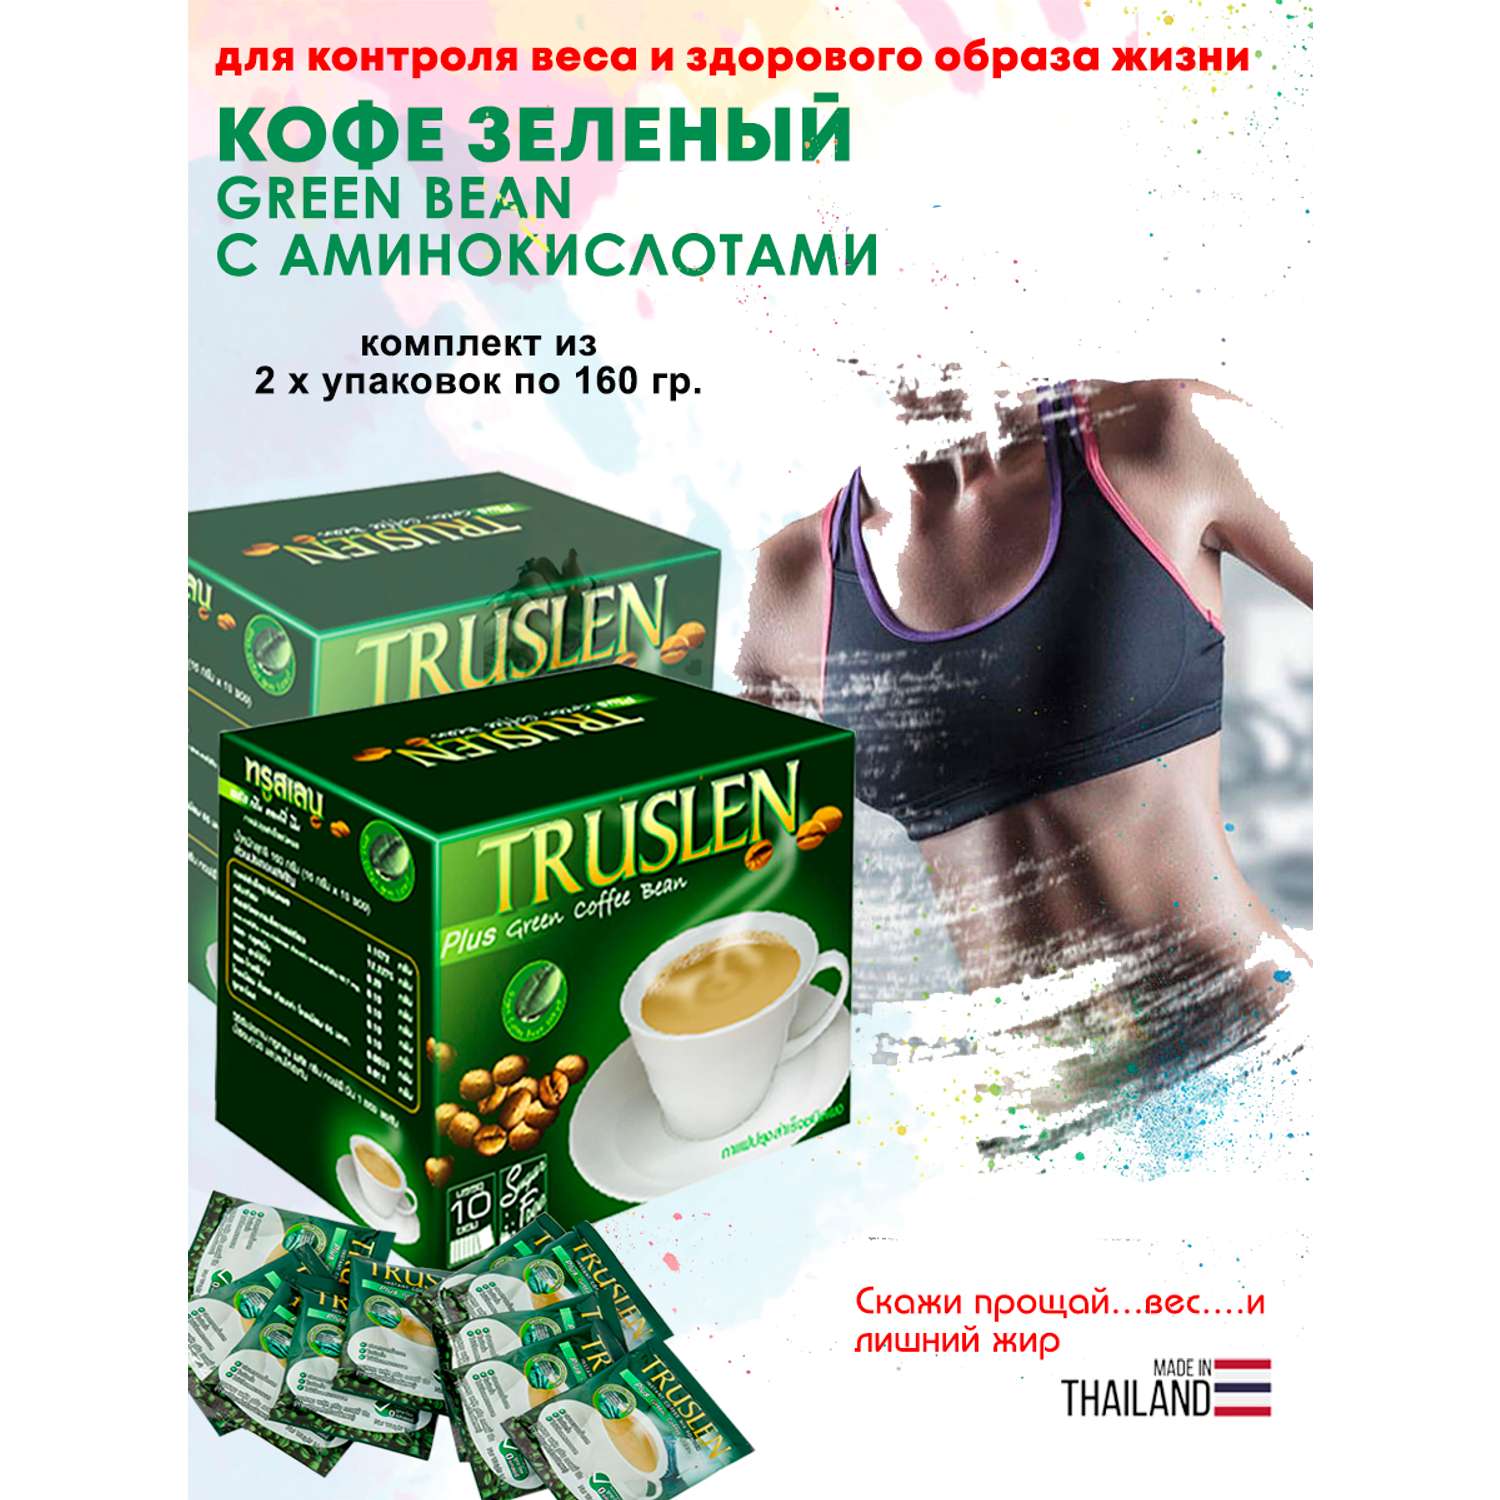 Кофе Зеленый для Похудения Truslen c Аминокислотами 2 упаковки - фото 1